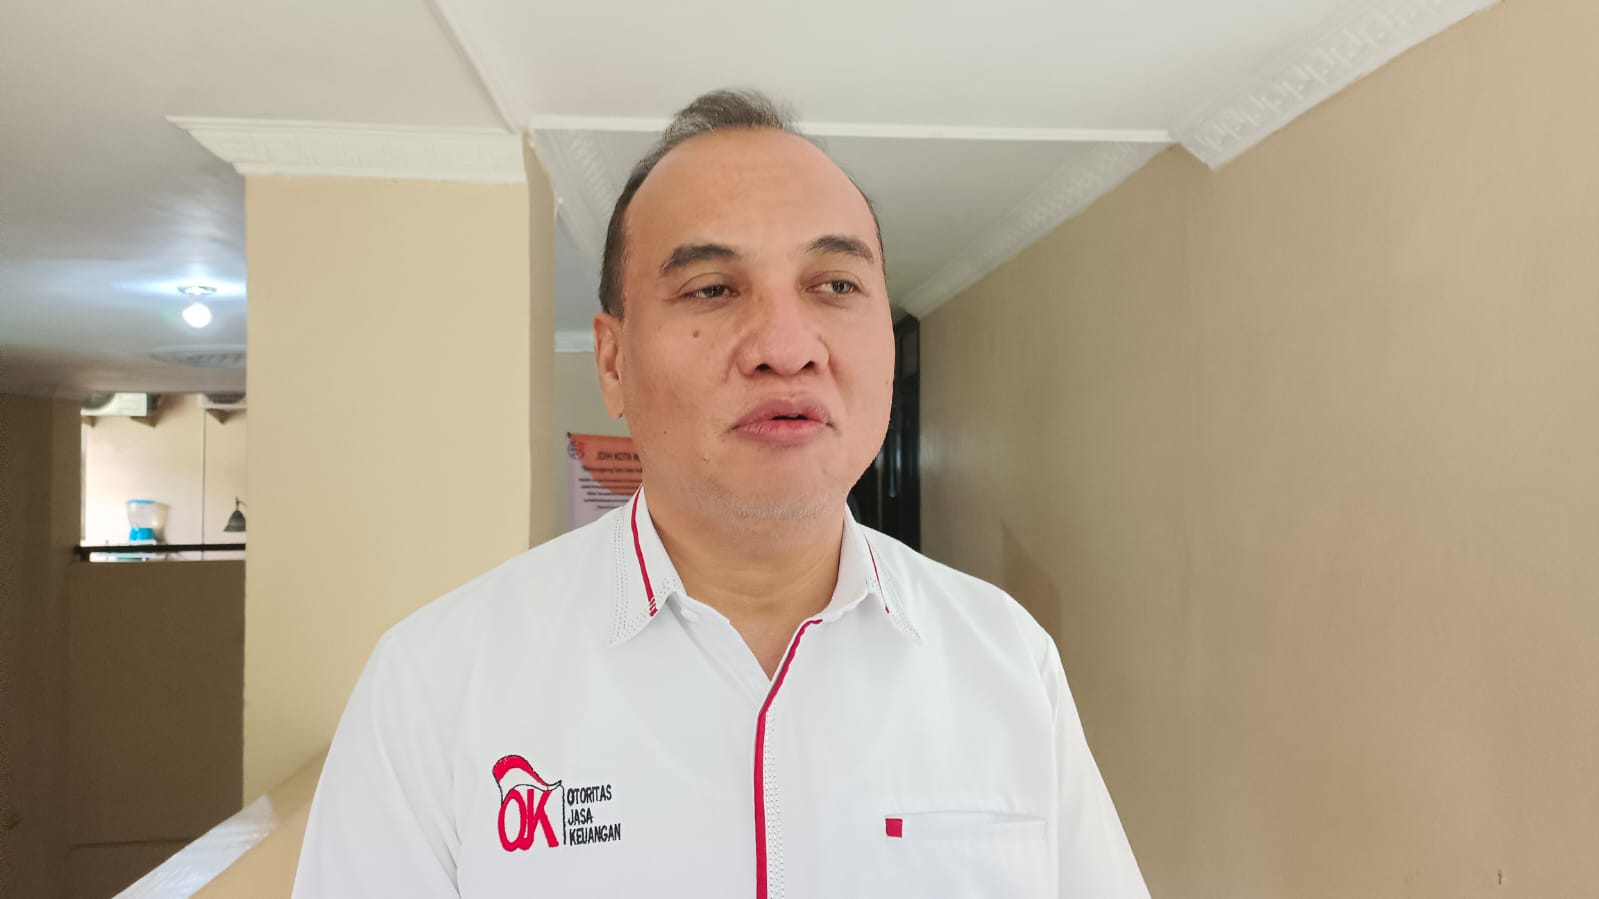 Ketahui Ciri Pinjol Legal dan Ilegal, OJK Lampung Beri Penyuluhan Masyarakat dan ASN Metro